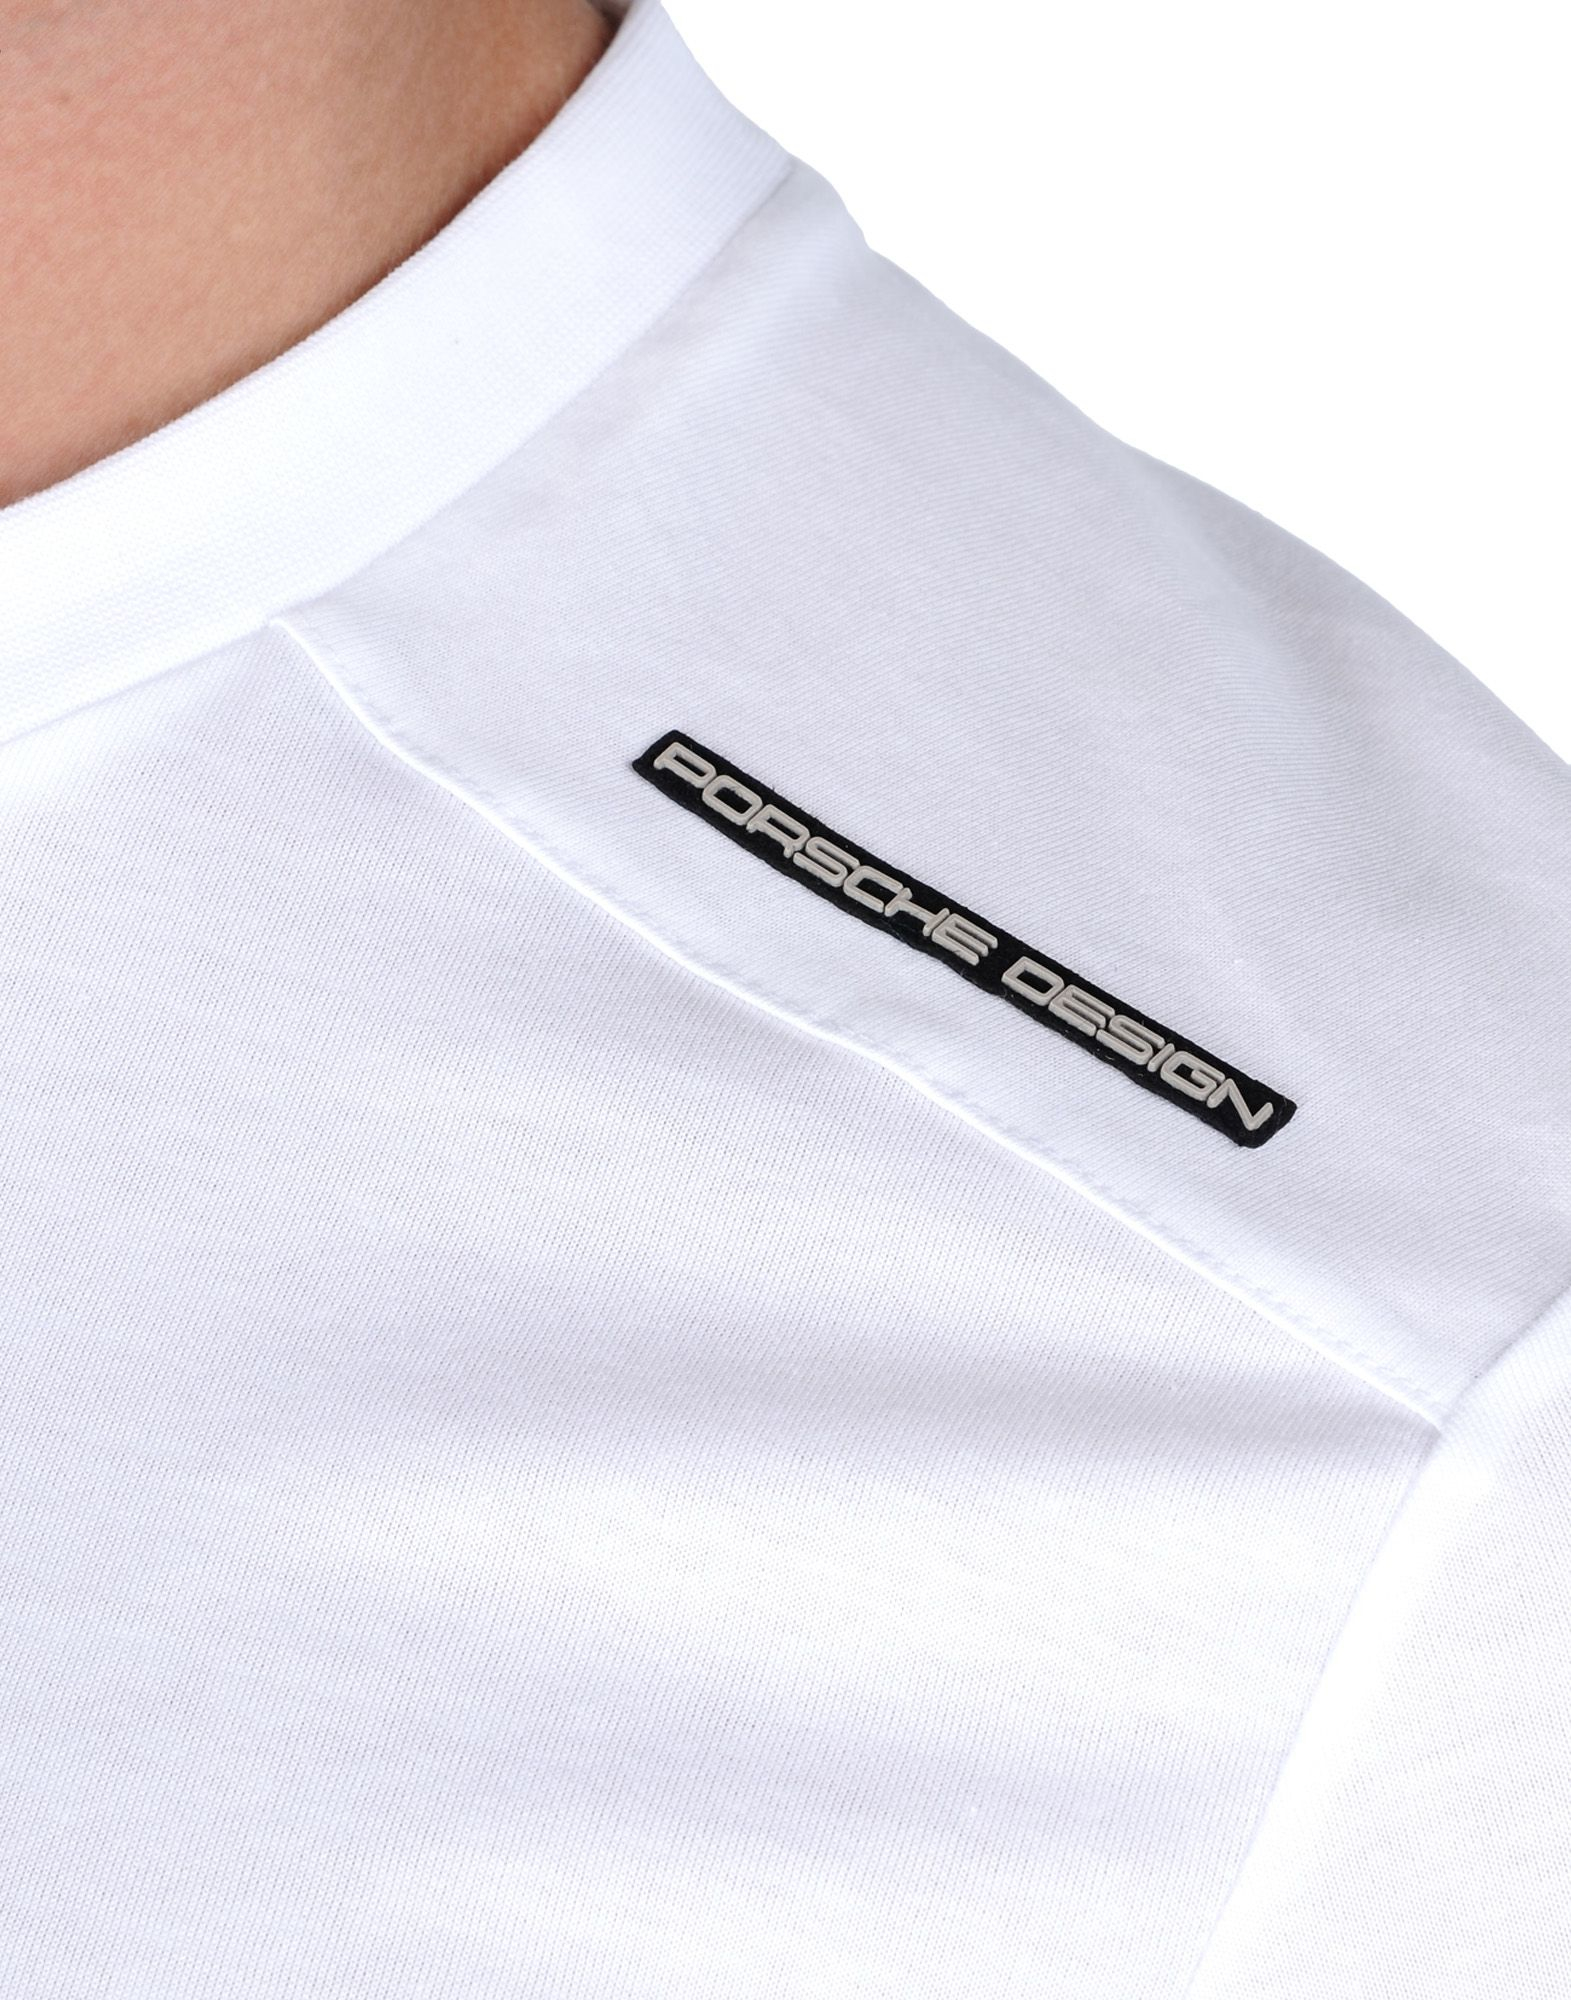 kažiprst handy žlicu  Porsche Design Cotton T-shirt in White for Men - Lyst